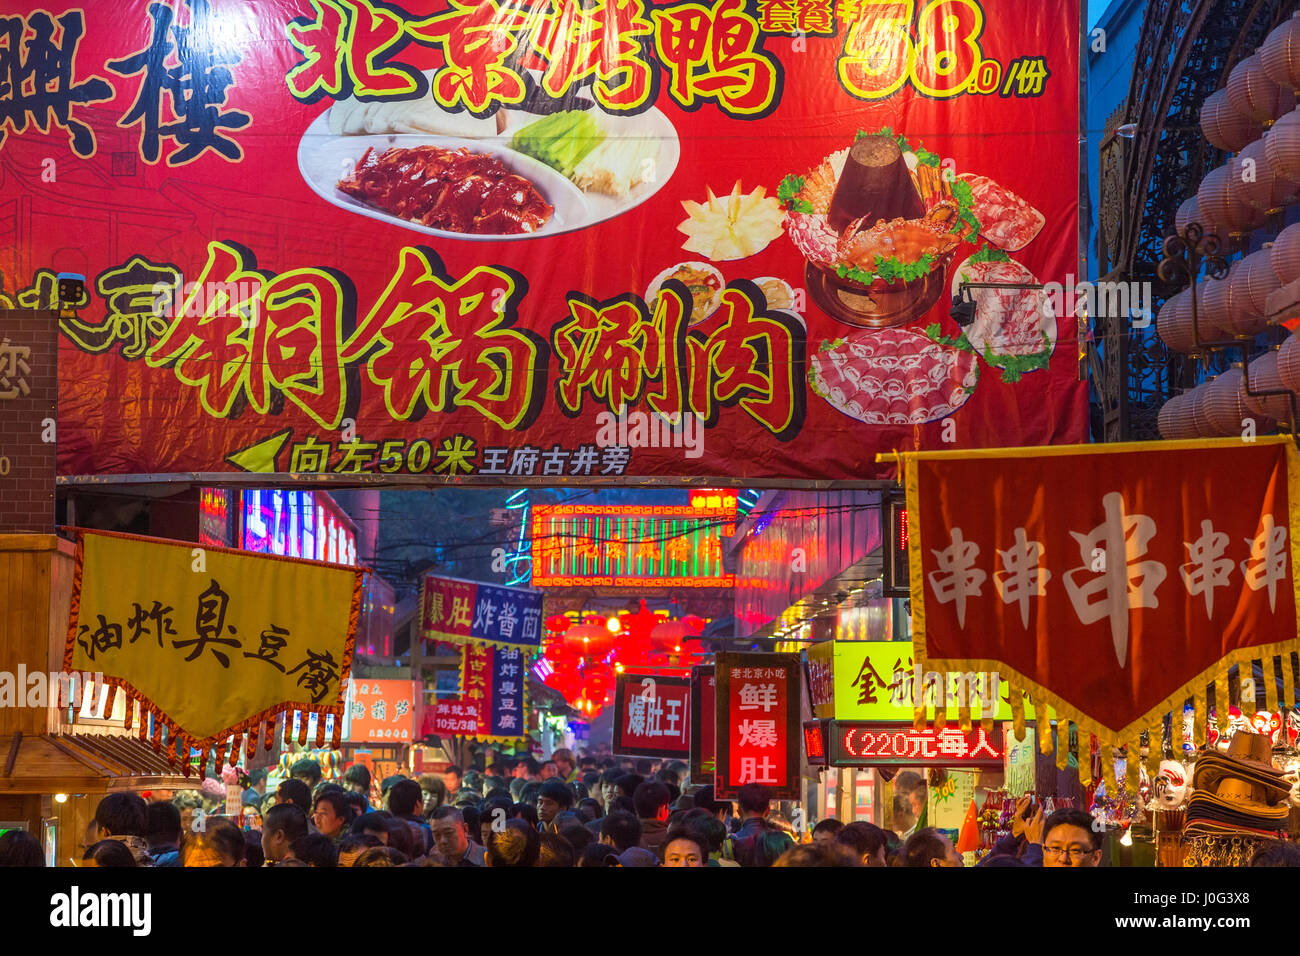 Marché de nuit de Donghuamen, Wangfujing, Beijing, Chine Banque D'Images